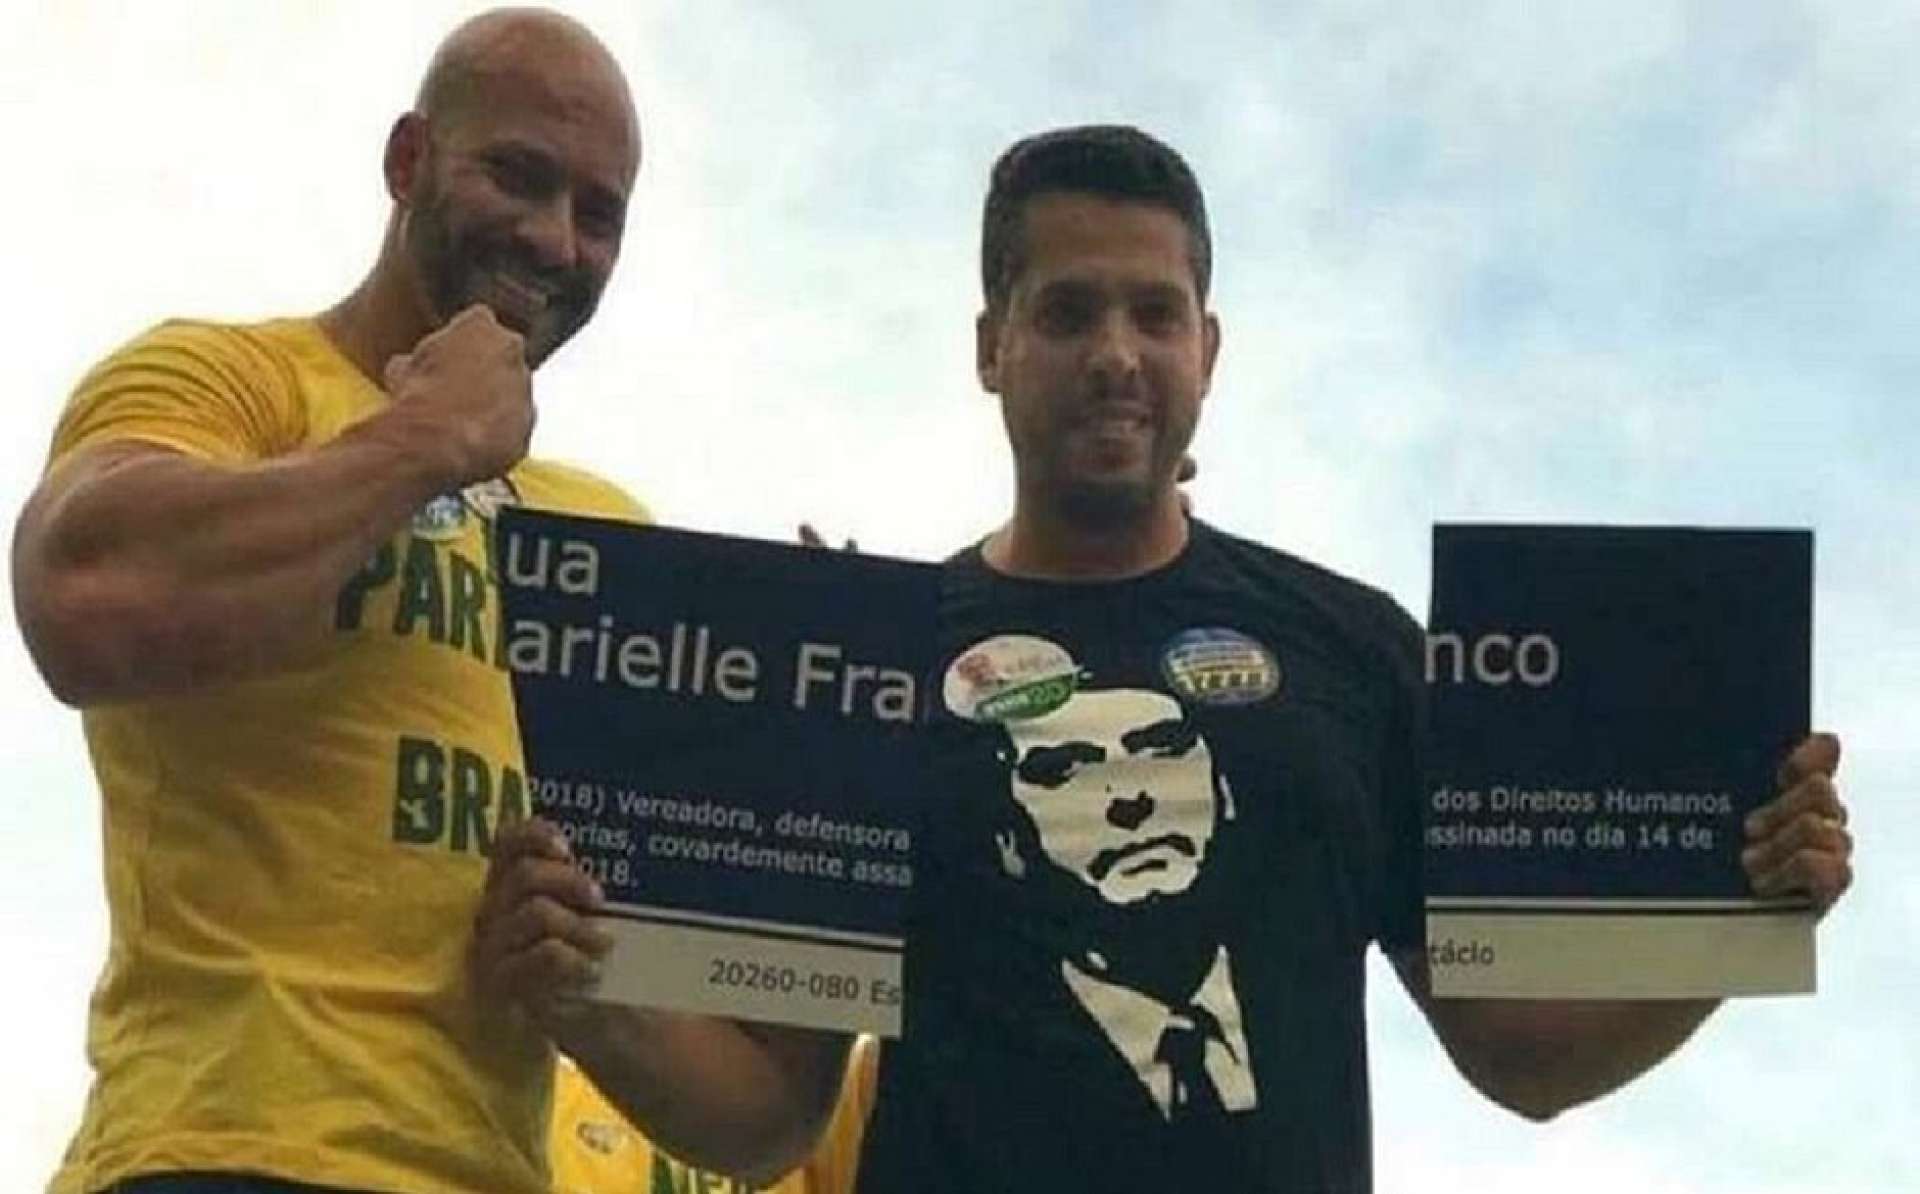 Daniel Silveira, à esquerda, ficou famoso após ajudar a quebrar placa com o nome de Marielle Franco